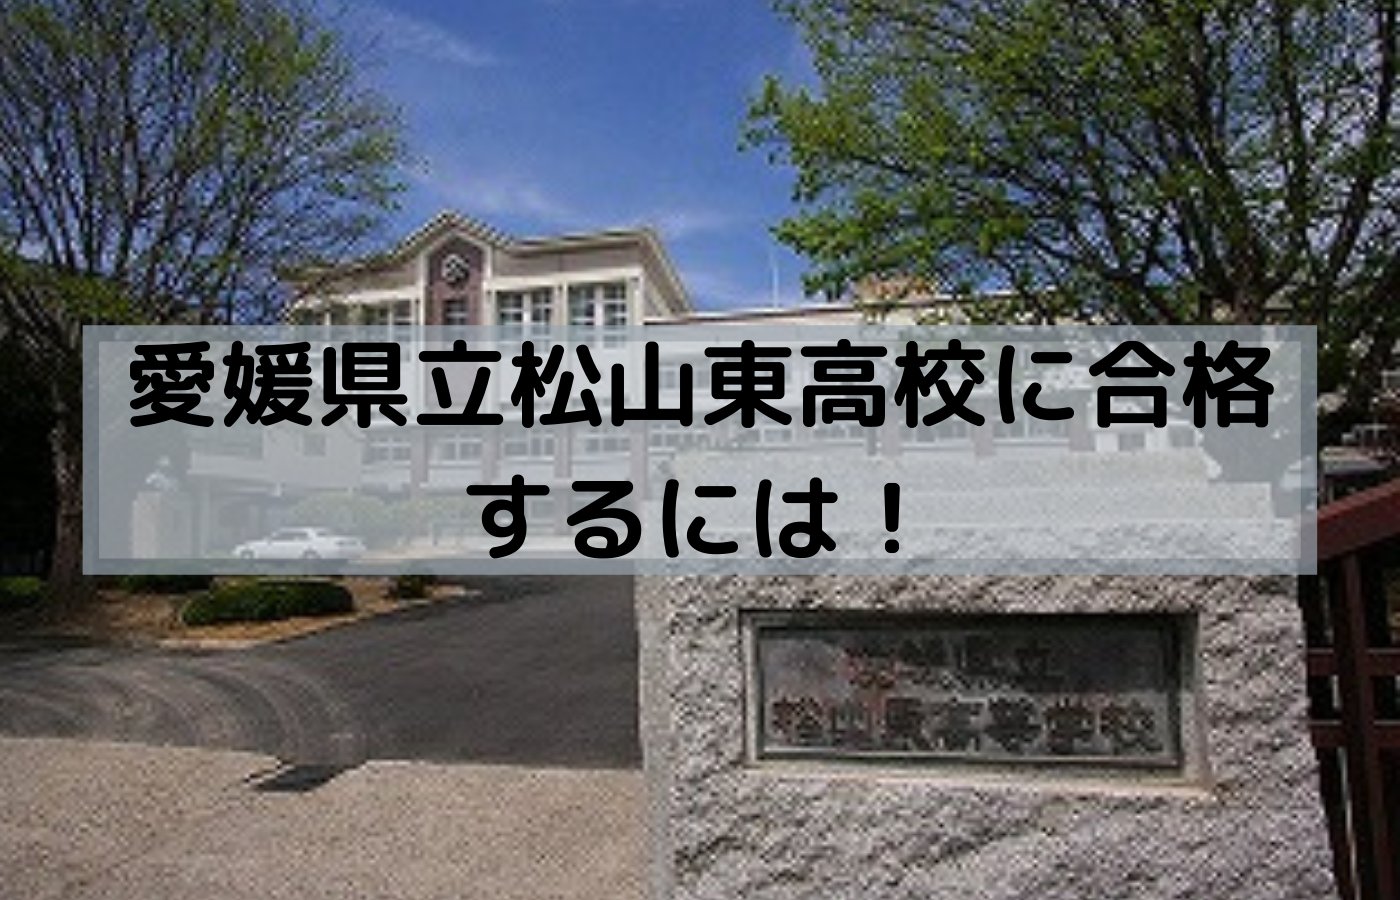 愛媛県立松山東高校に合格するための戦略を紹介